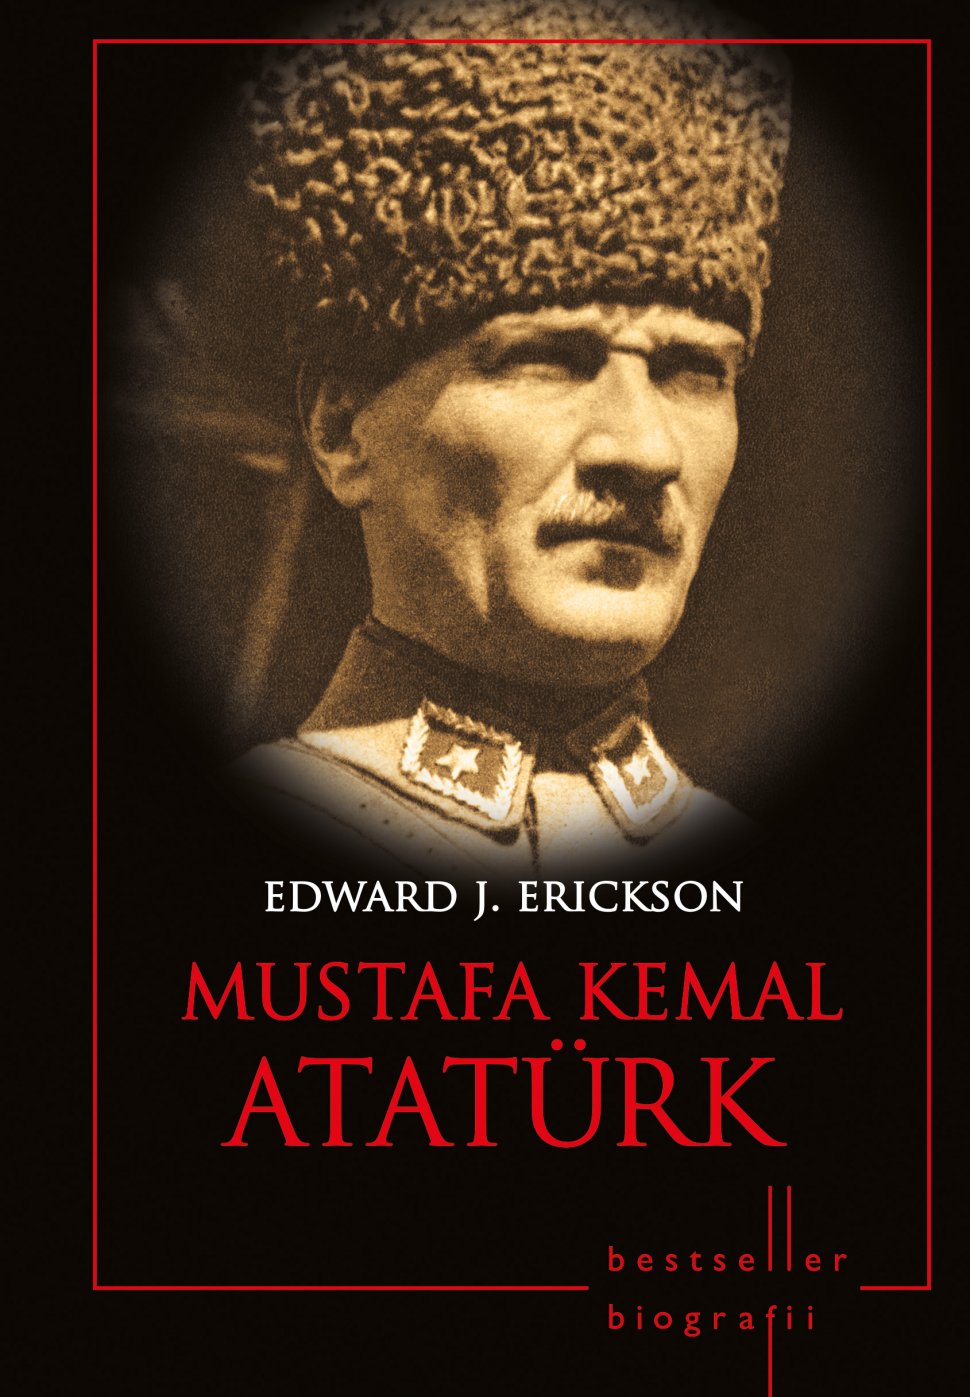 Mustafa Kemal Atatürk, cel de-al treilea volum al colecţiei de Biografii